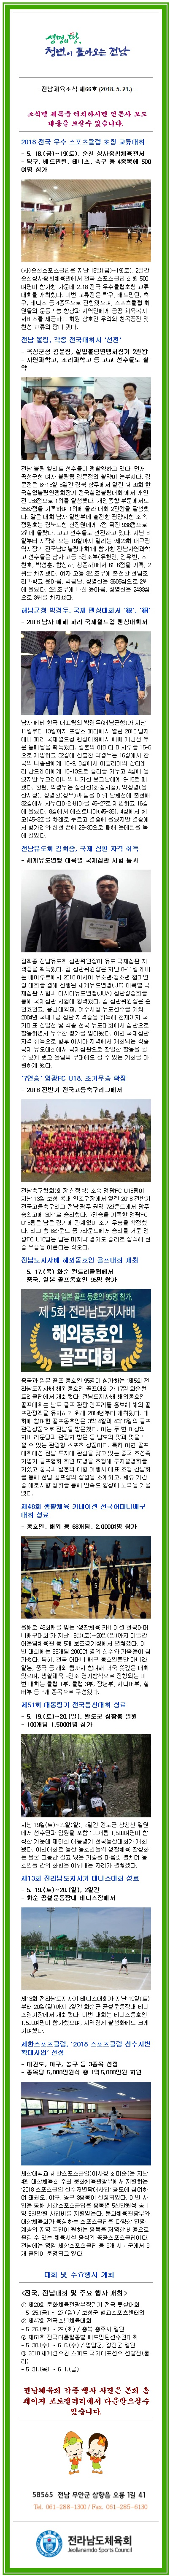 뉴스레터 제66호 첨부파일